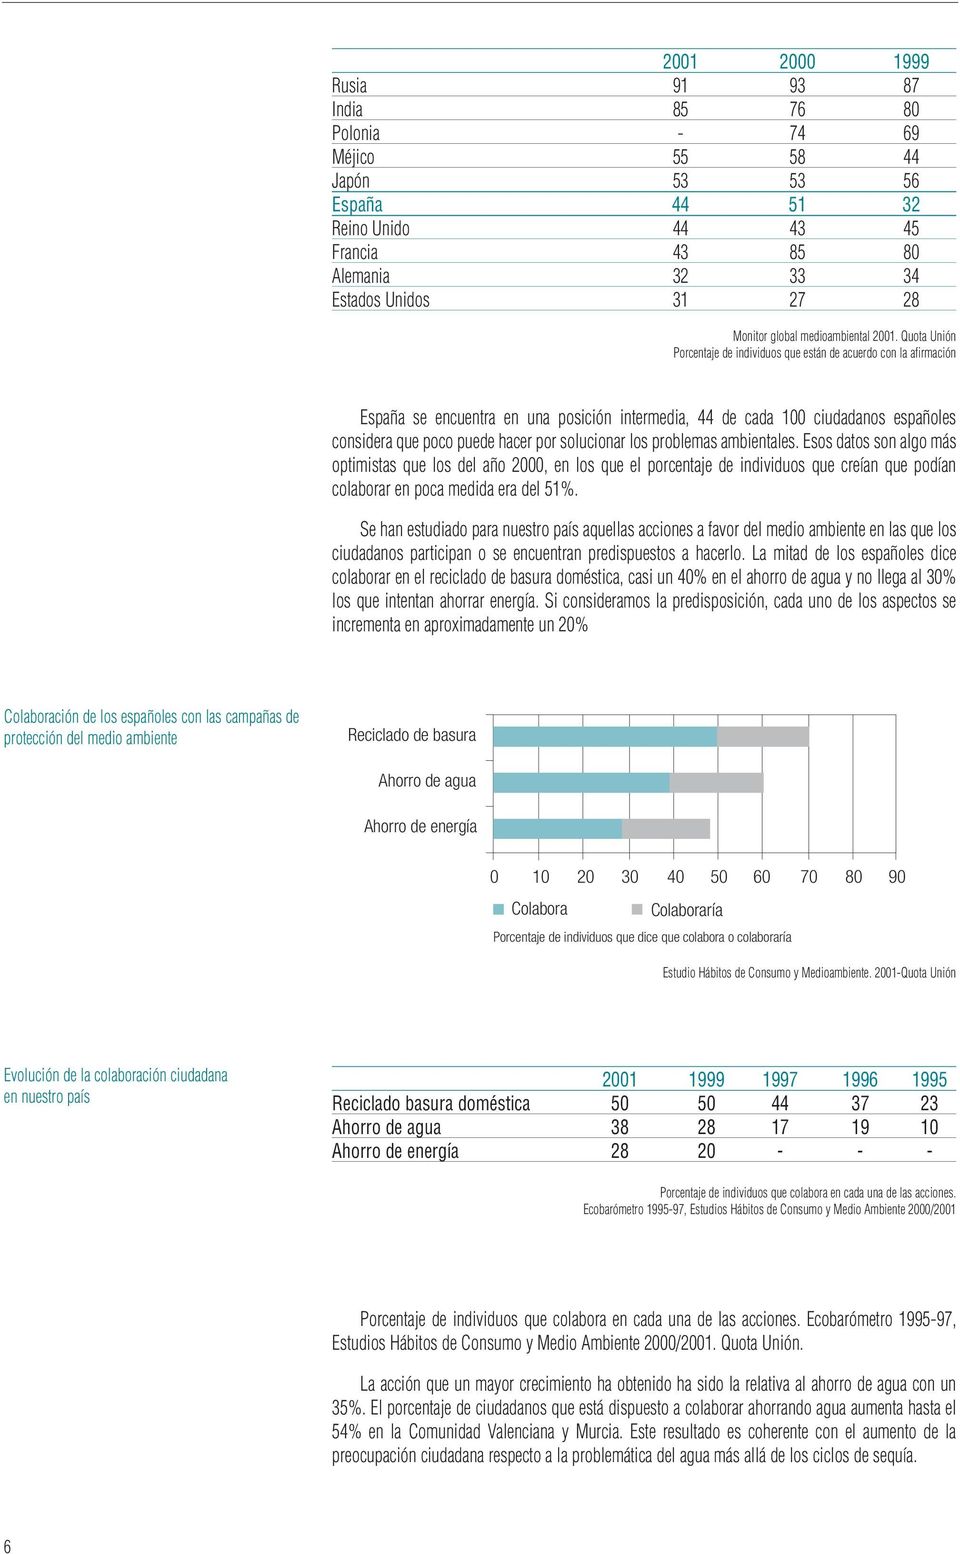 Quota Unión Porcentaje de individuos que están de acuerdo con la afirmación España se encuentra en una posición intermedia, 44 de cada 100 ciudadanos españoles considera que poco puede hacer por